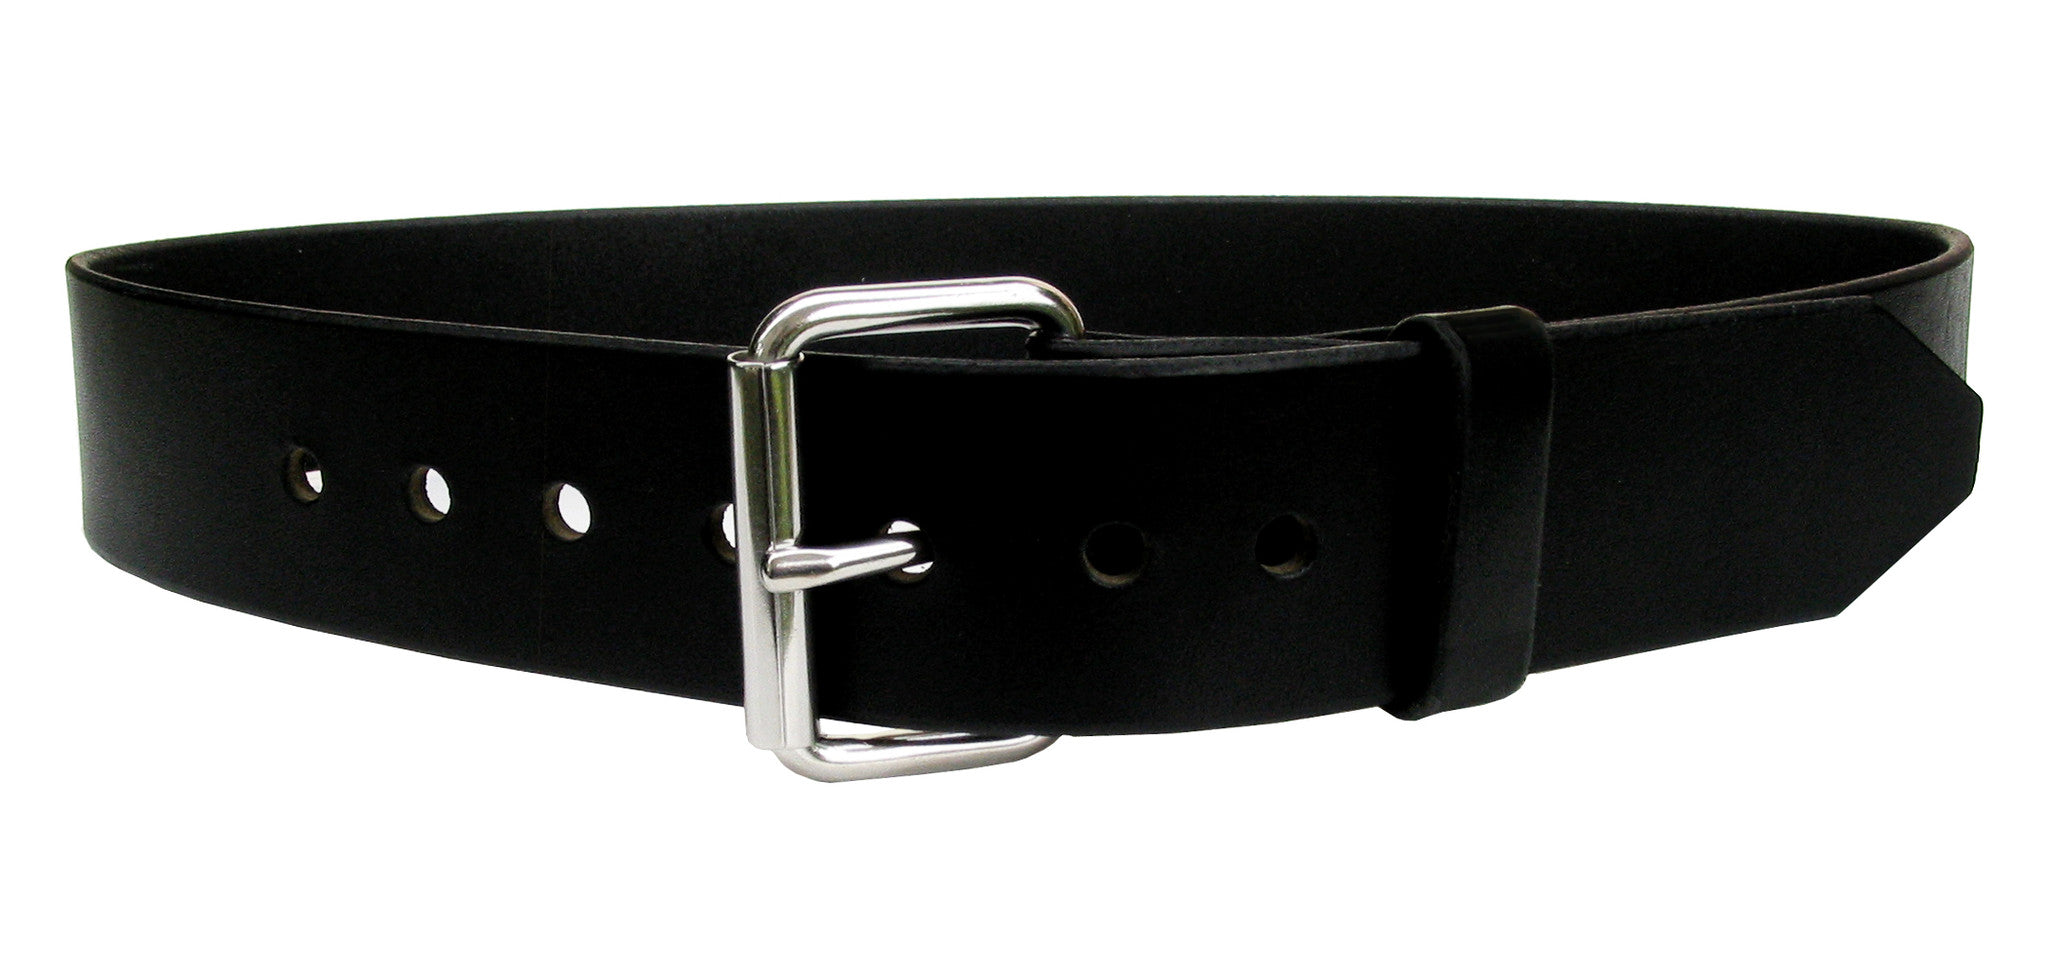 Inch Wide Mens Leather Belts Online Clearance | www.snav.it